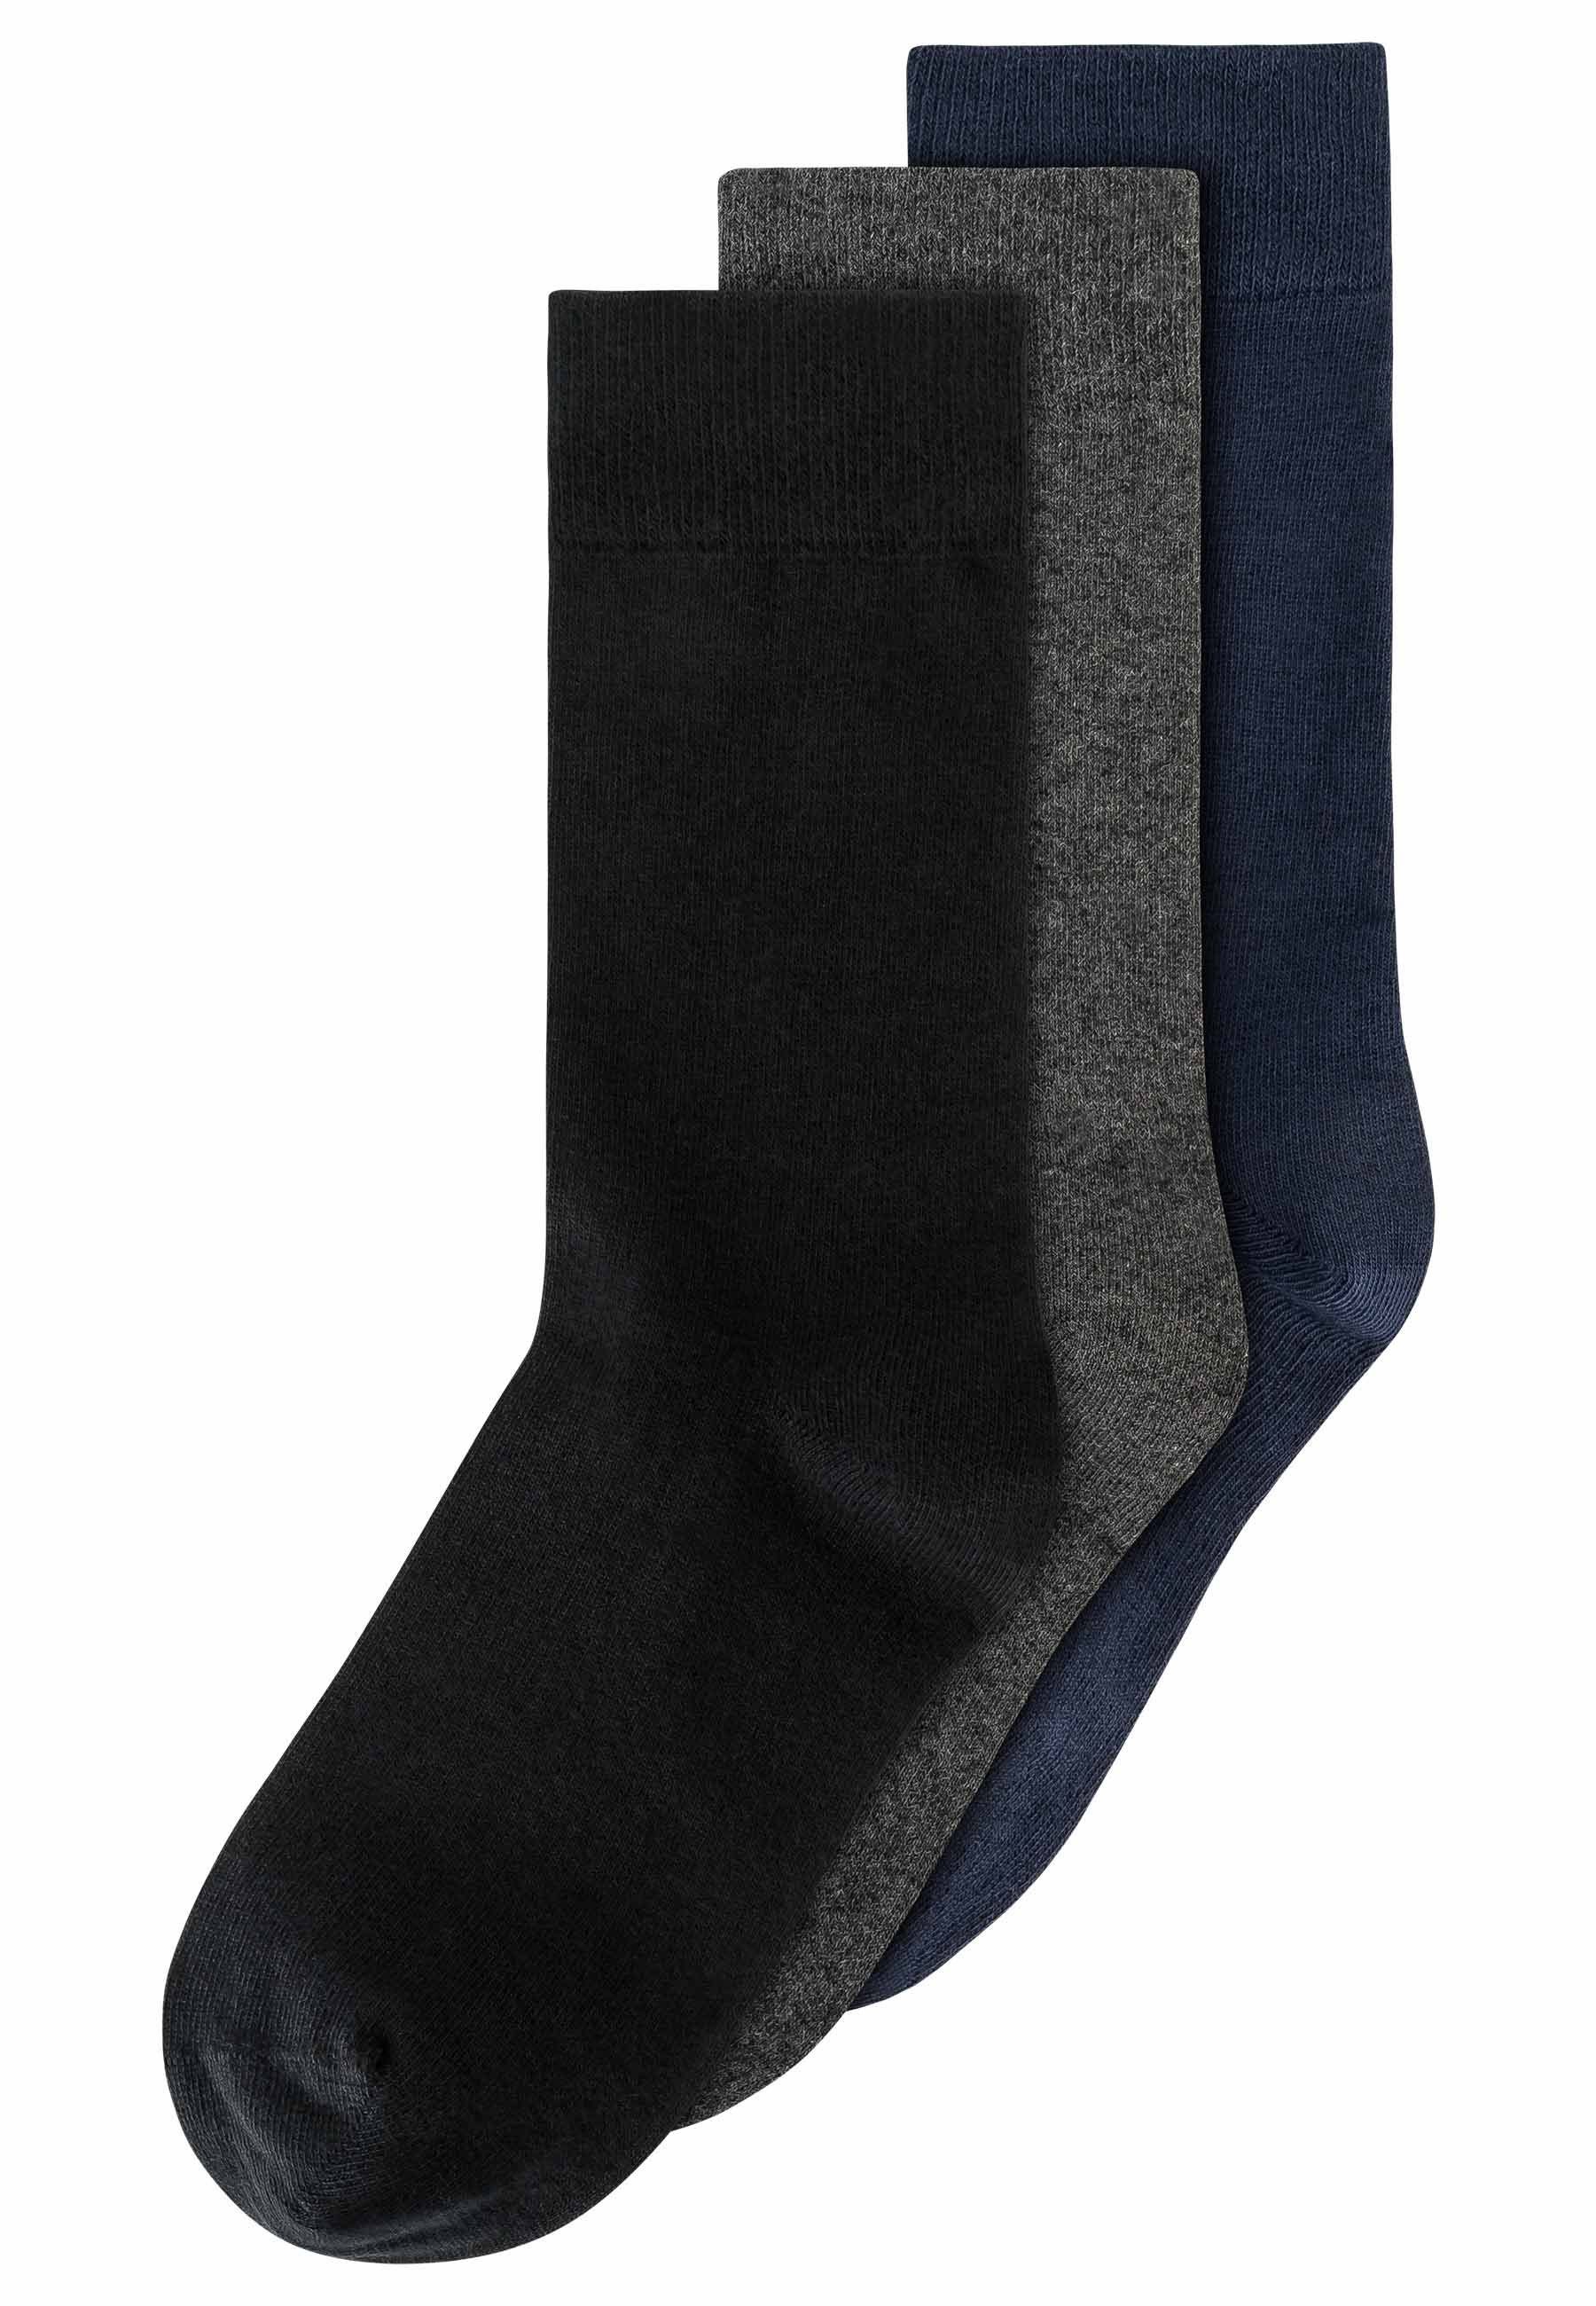 MELA Socken Socken 3er Pack Basic schwarz / anthrazit melange / navy